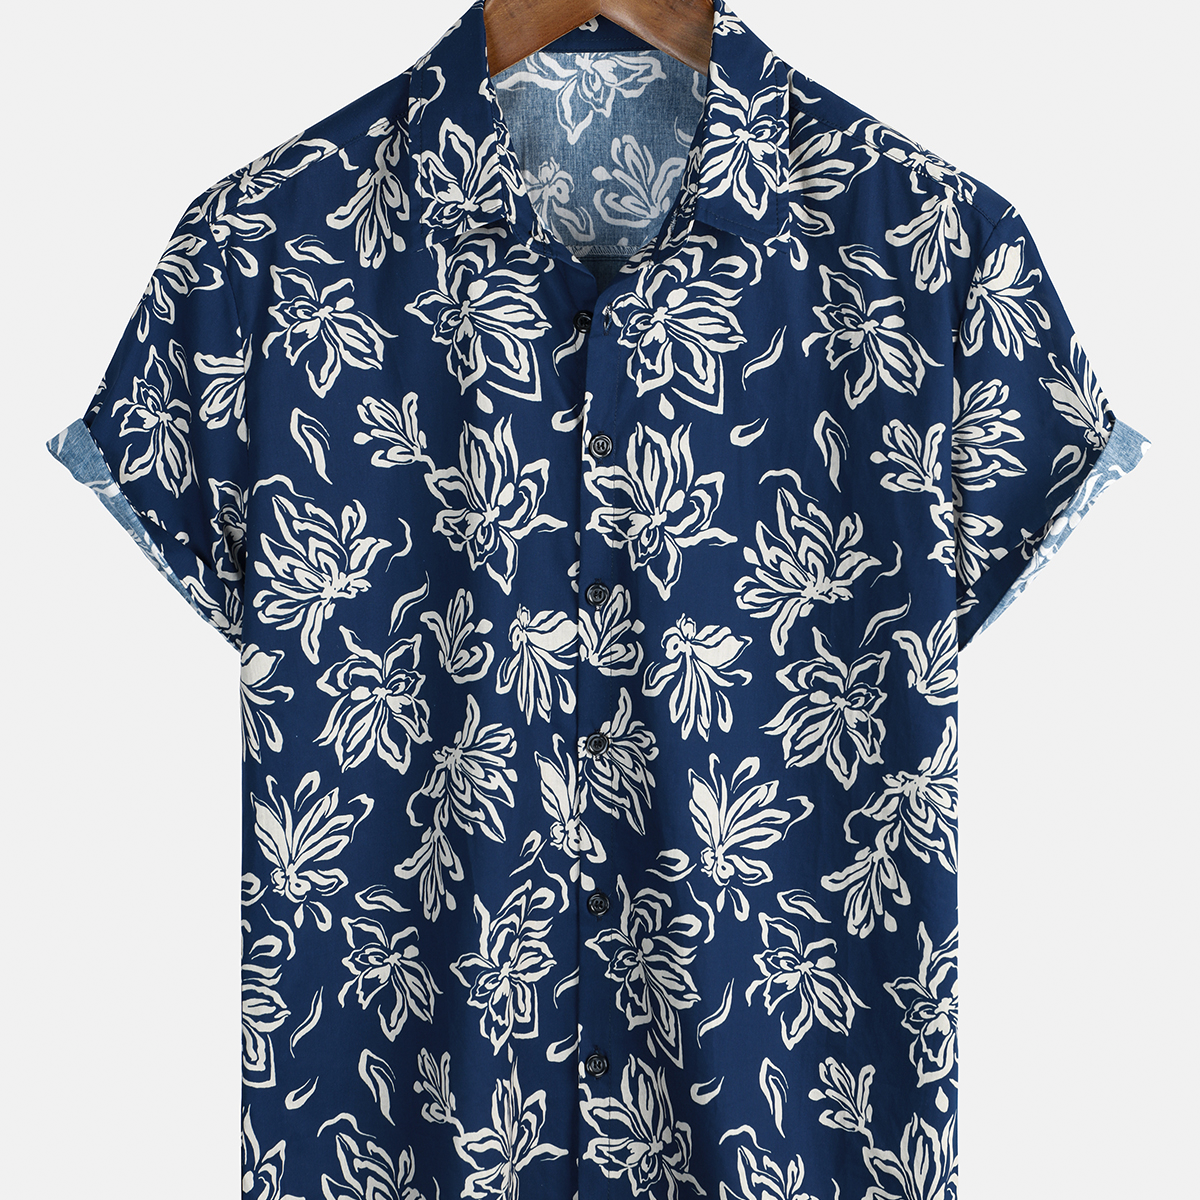 Men's Blue Floral 100% Cotton Hawaiian Button Up Summer Shirt